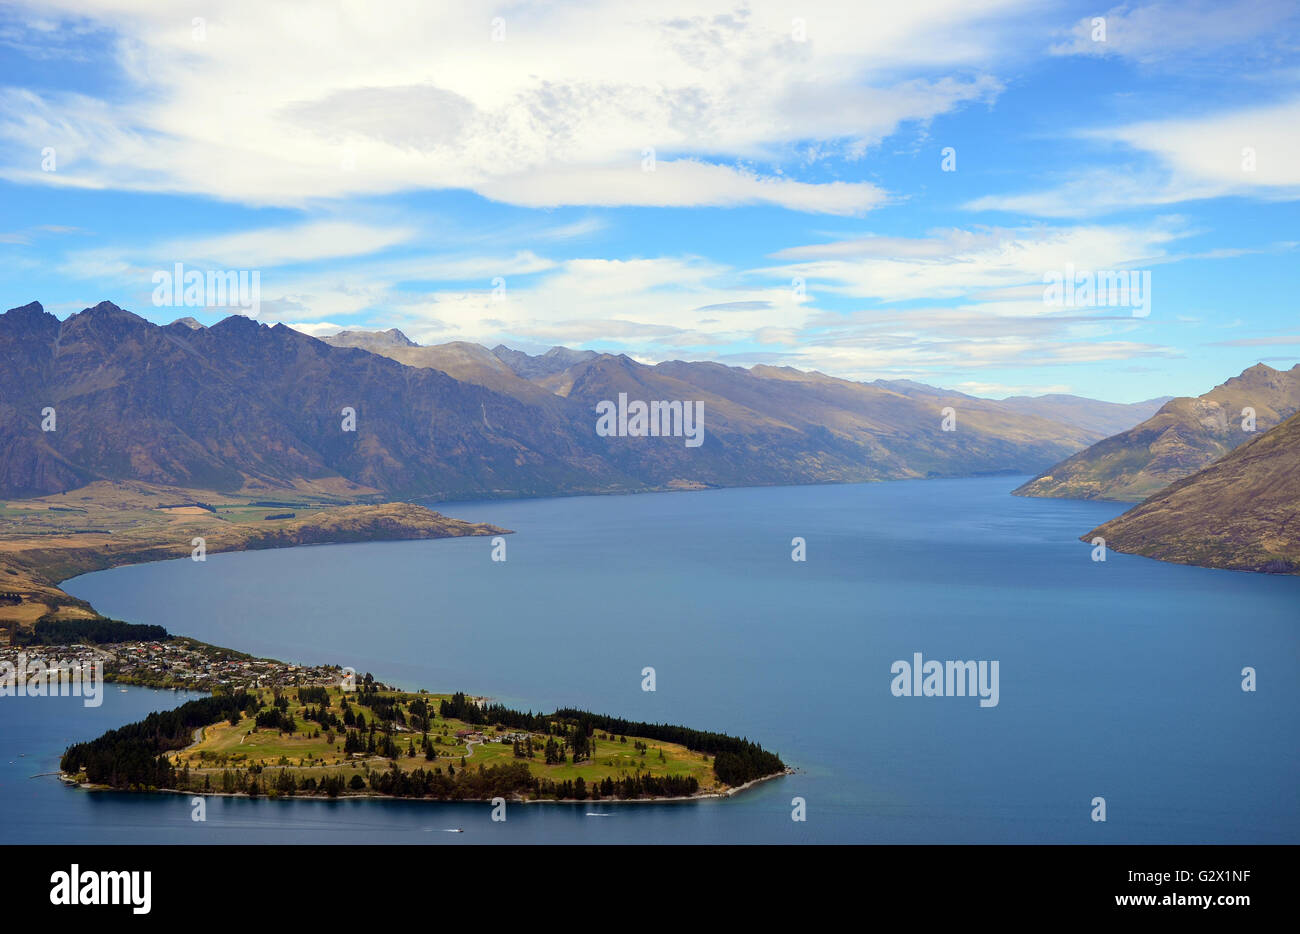 Vue panoramique de Queenstown et ses environs de montagnes (Les Remarkables) sur le lac Wakatipu, Nouvelle-Zélande Banque D'Images